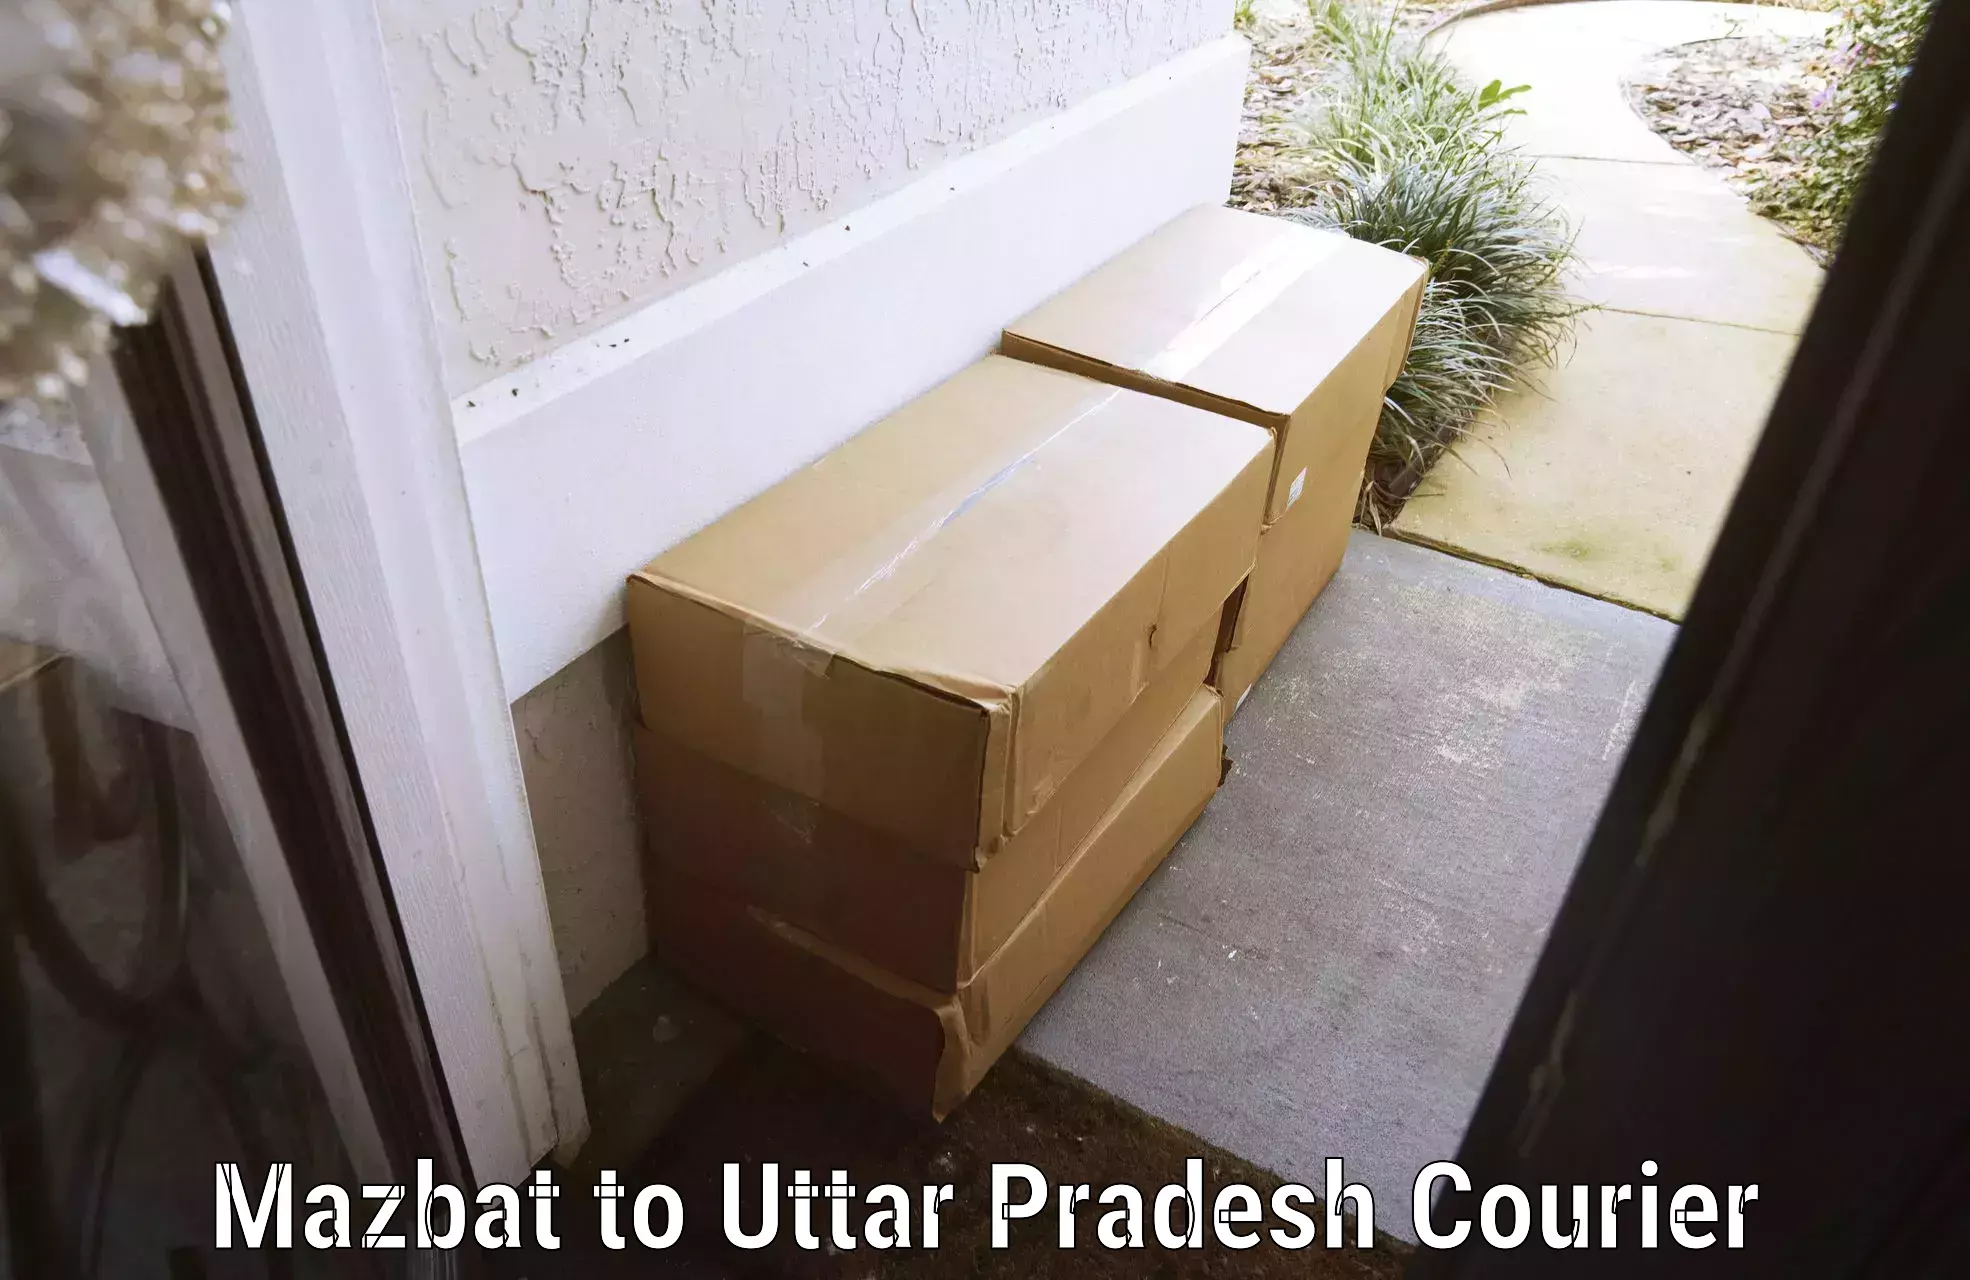 Baggage delivery scheduling Mazbat to Uttar Pradesh